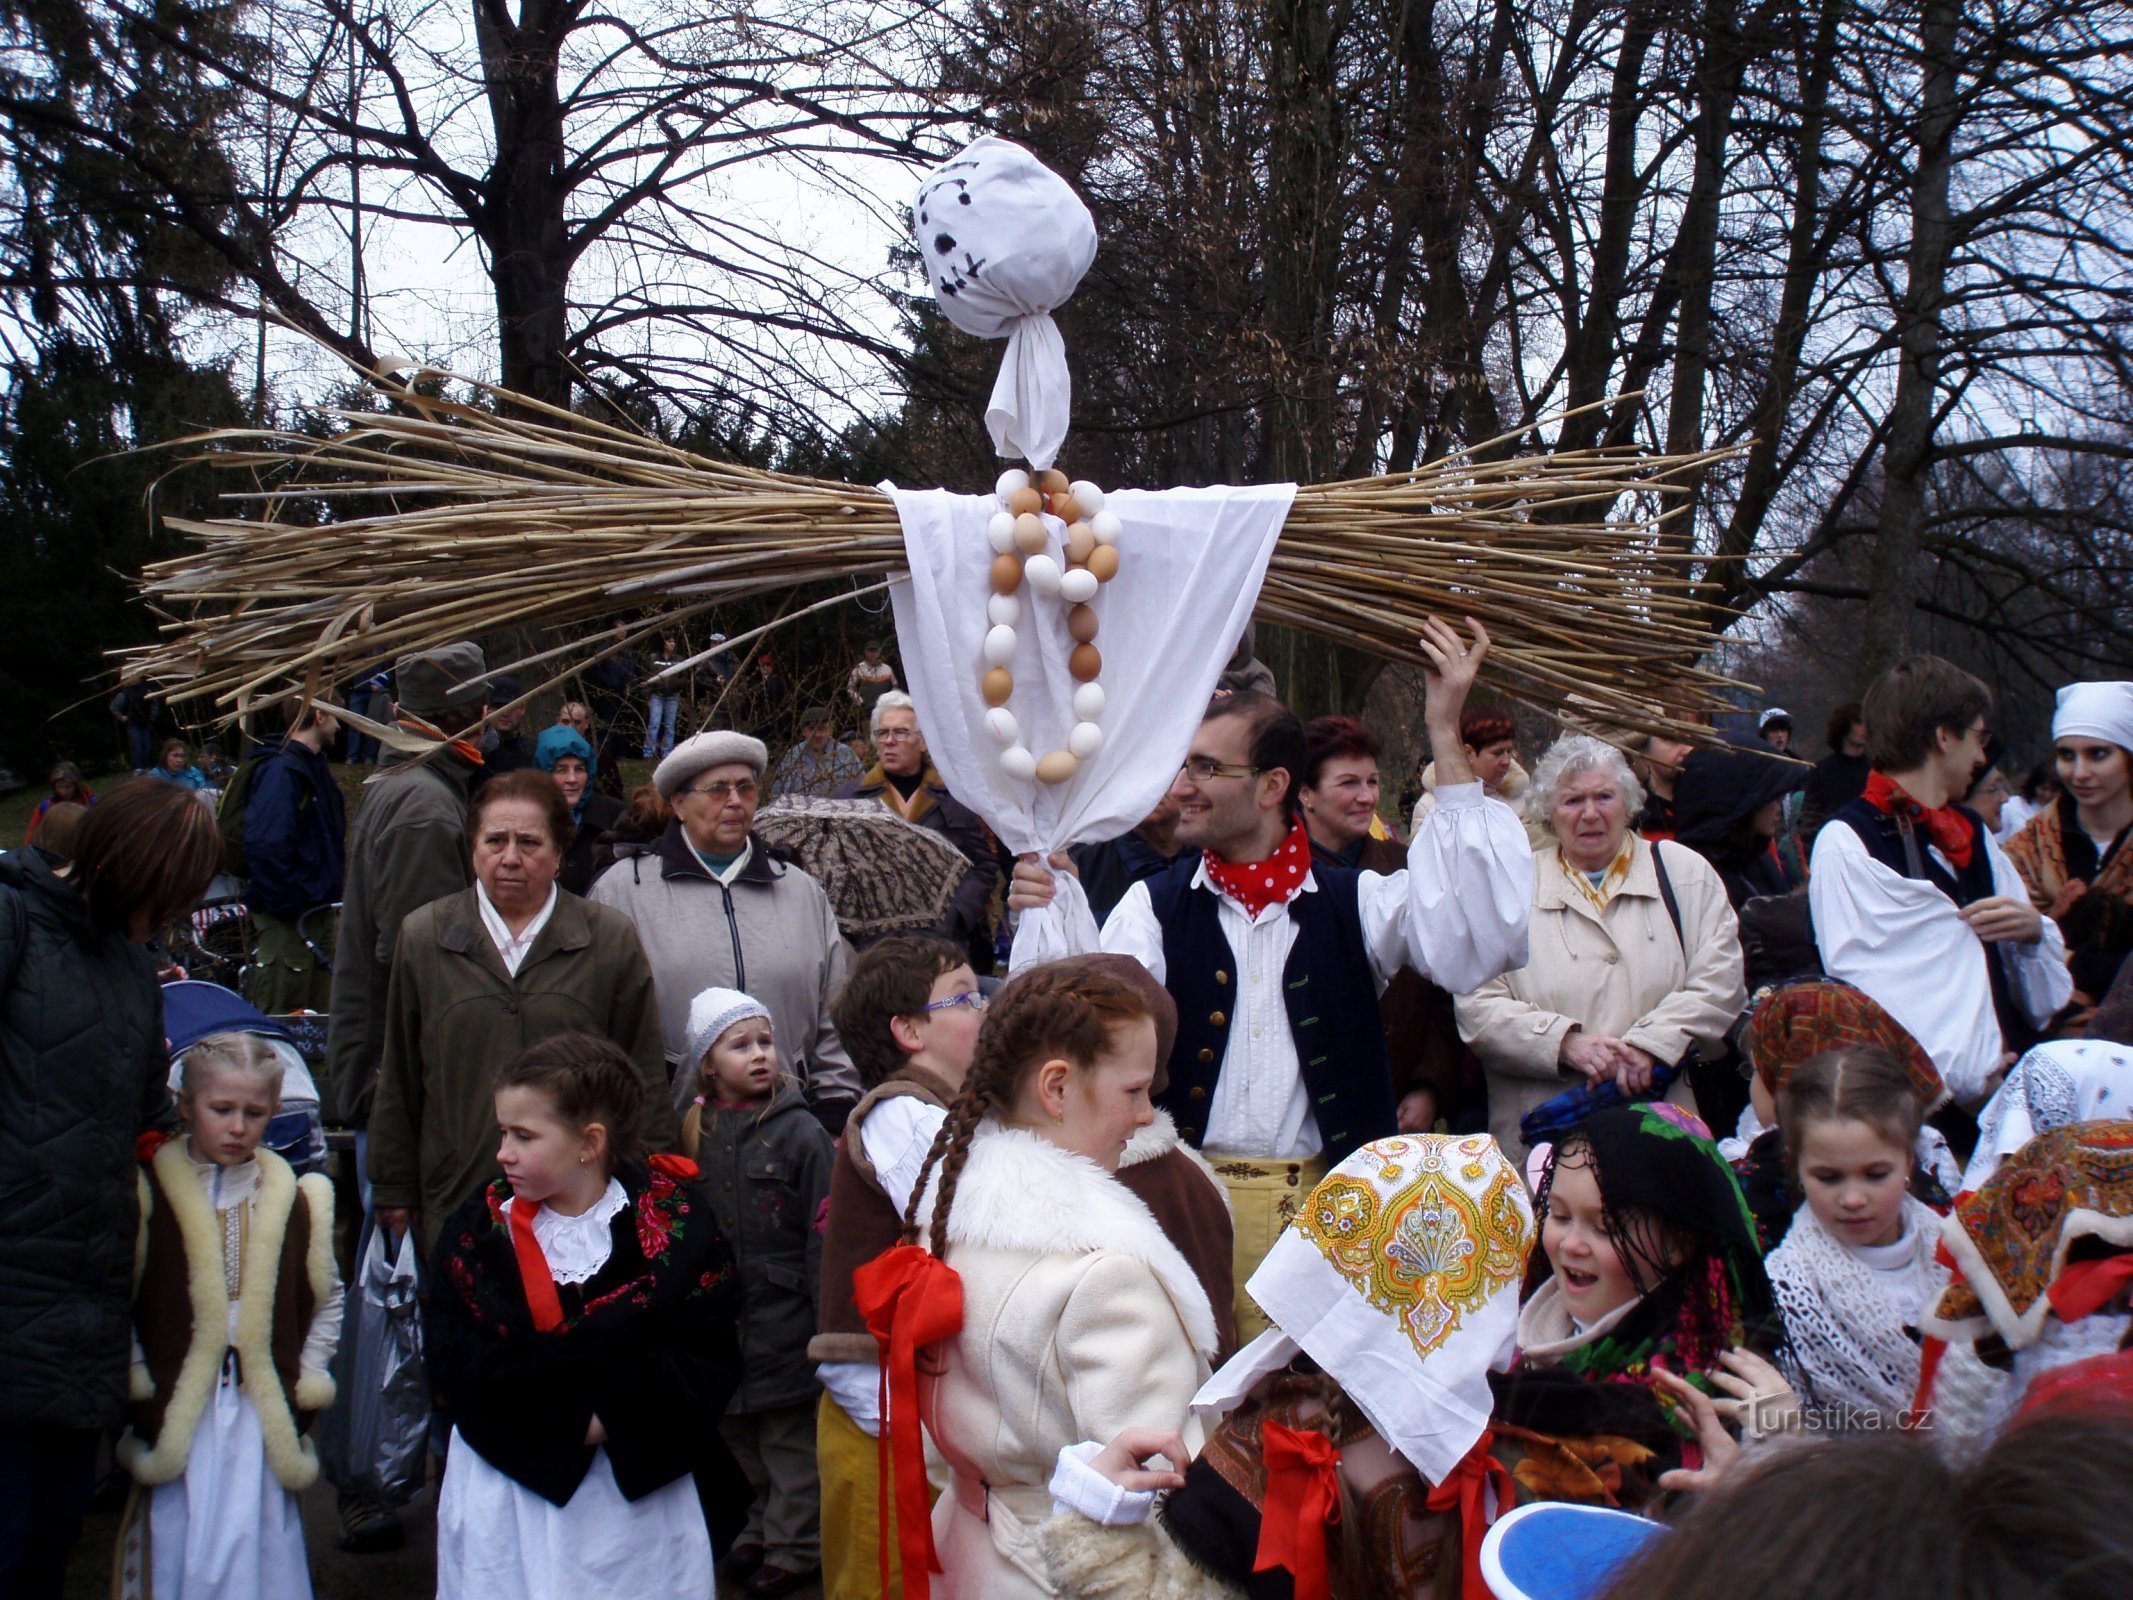 Exécution de la Smrtholka depuis Hradec Králové (Hradec Králové, 29.3.2009/XNUMX/XNUMX)